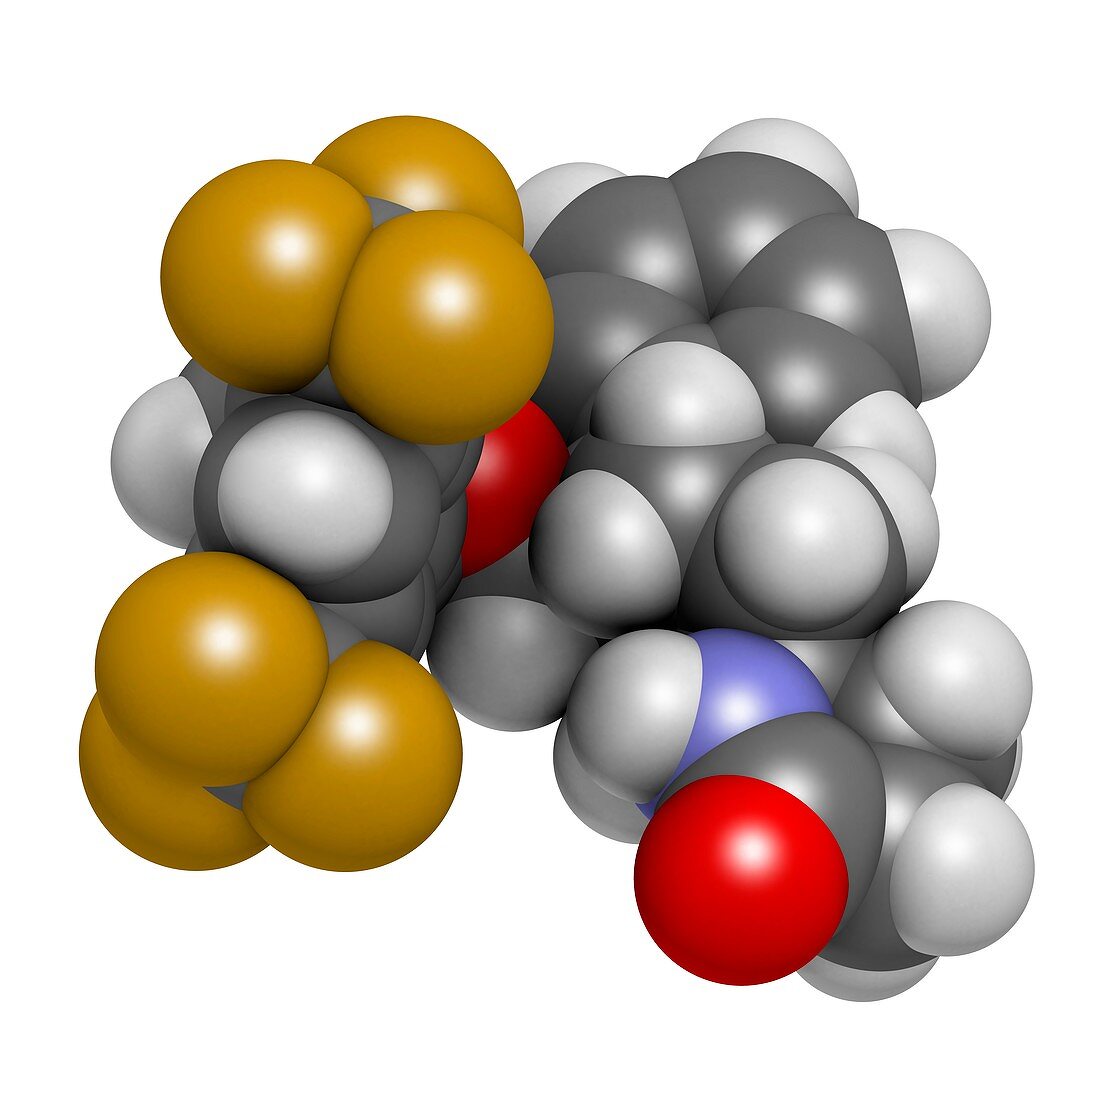 Rolapitant antiemetic drug molecule